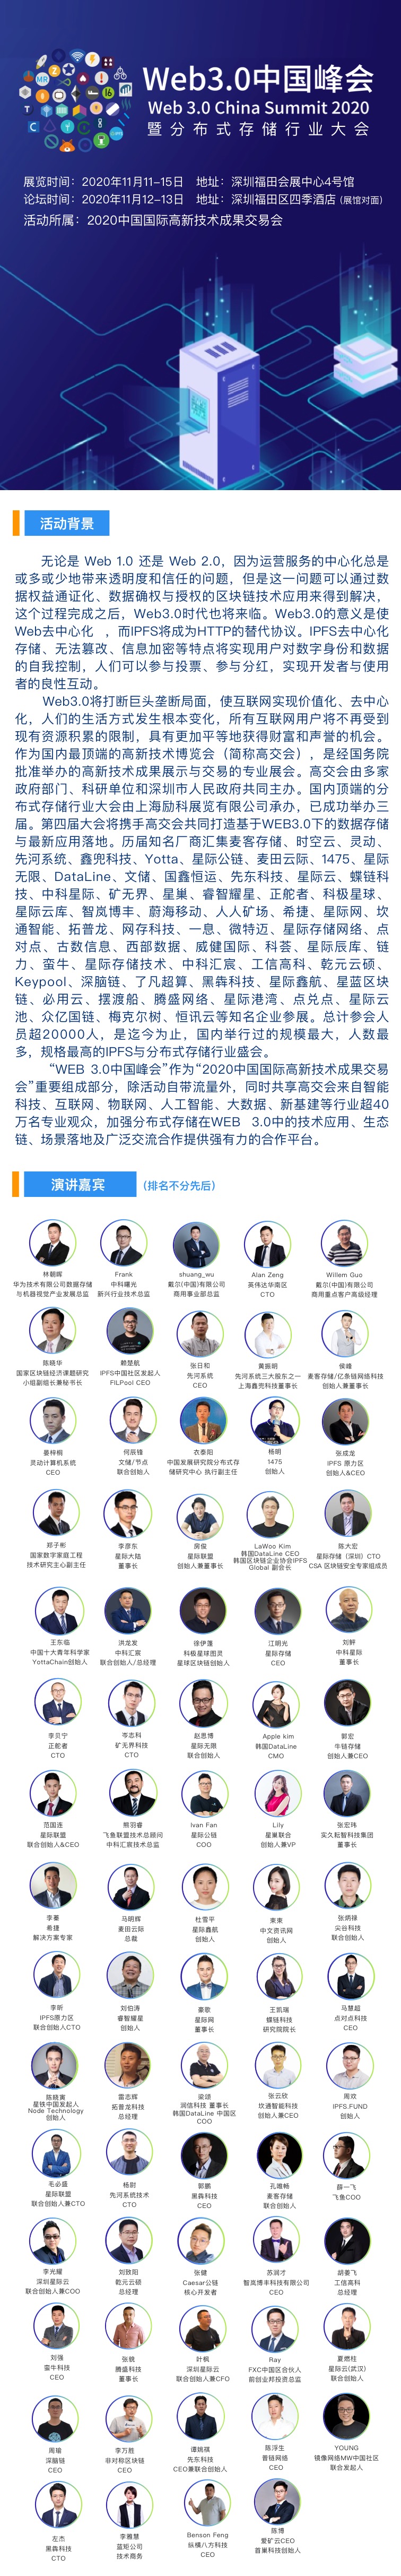 Web3.0中国峰会暨分布式存储行业大会